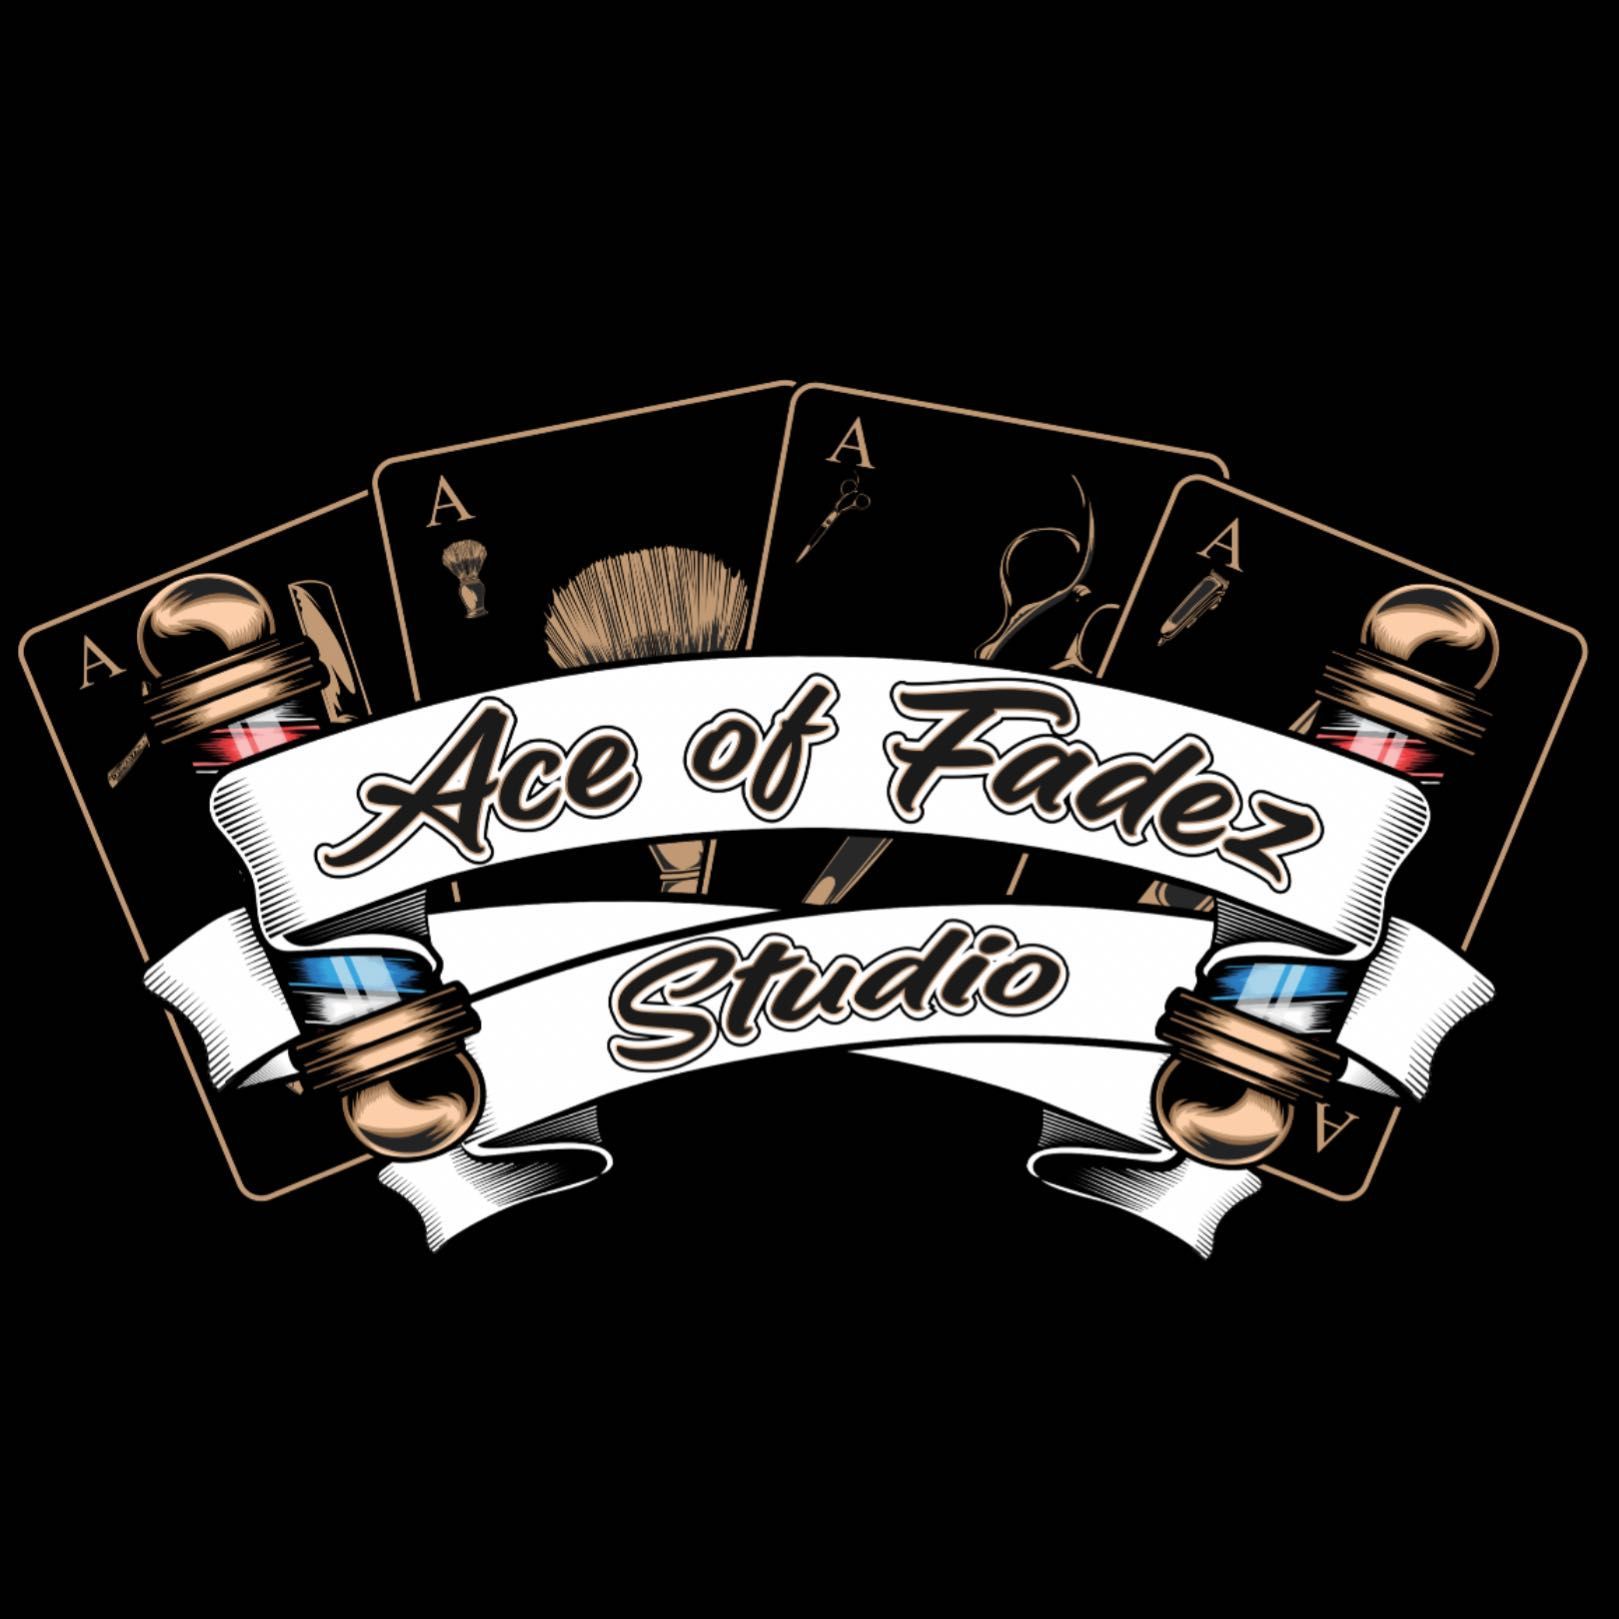 Ace of Fadez Studio, 656 South Main St, Suite C, Baxley, 31513